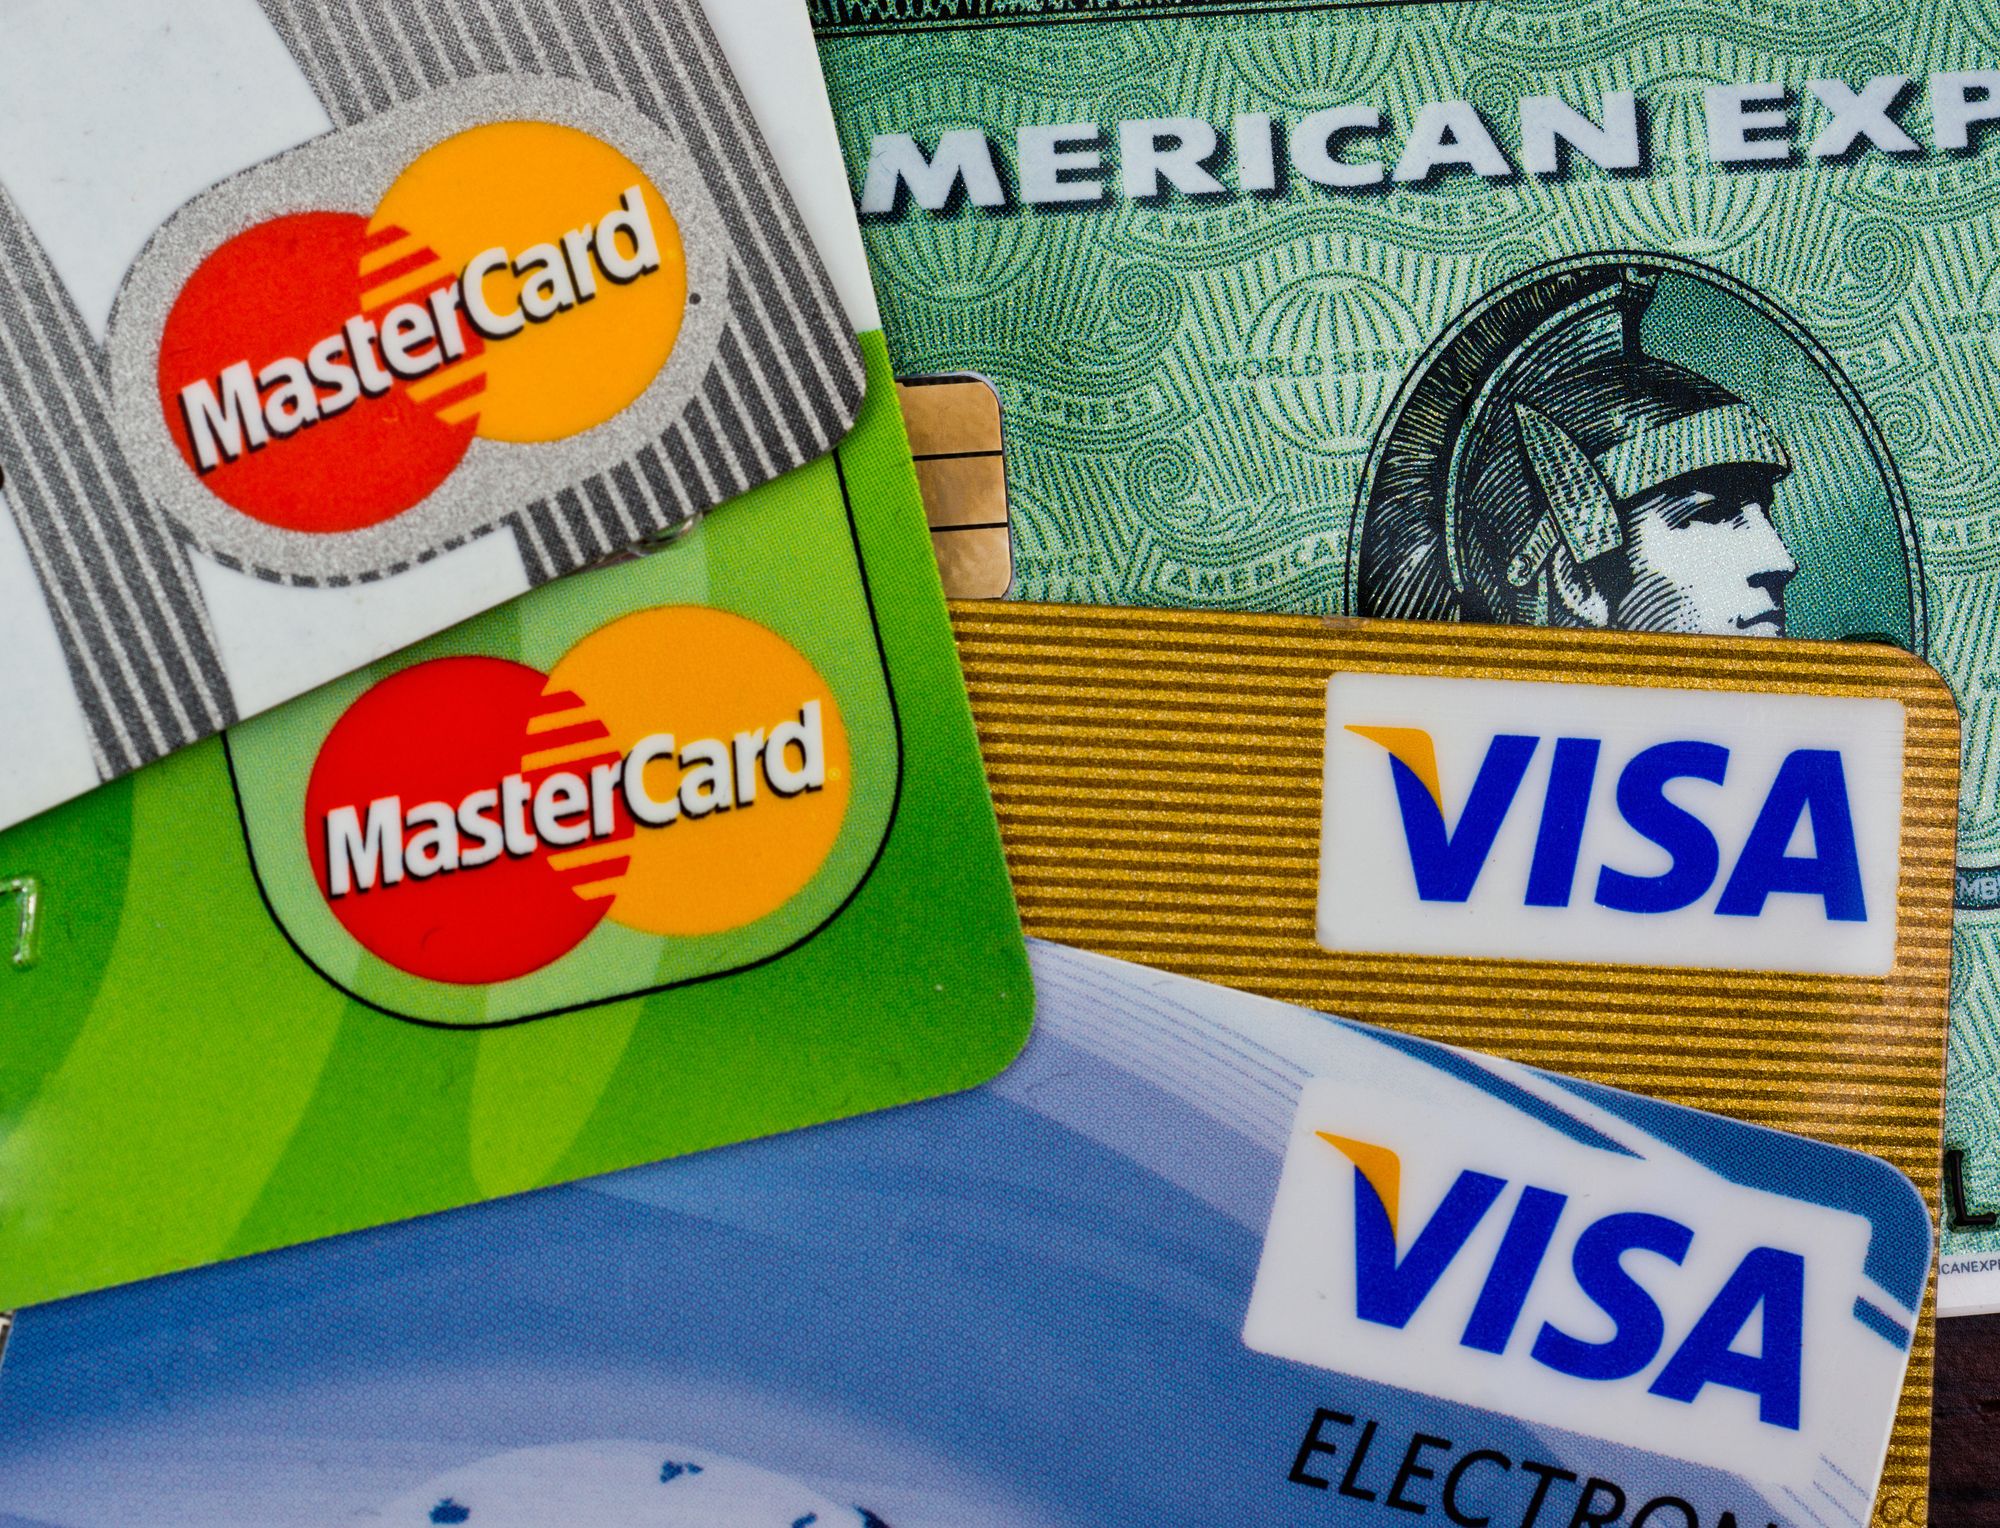 visa-mastercard-american-express-credit-cards